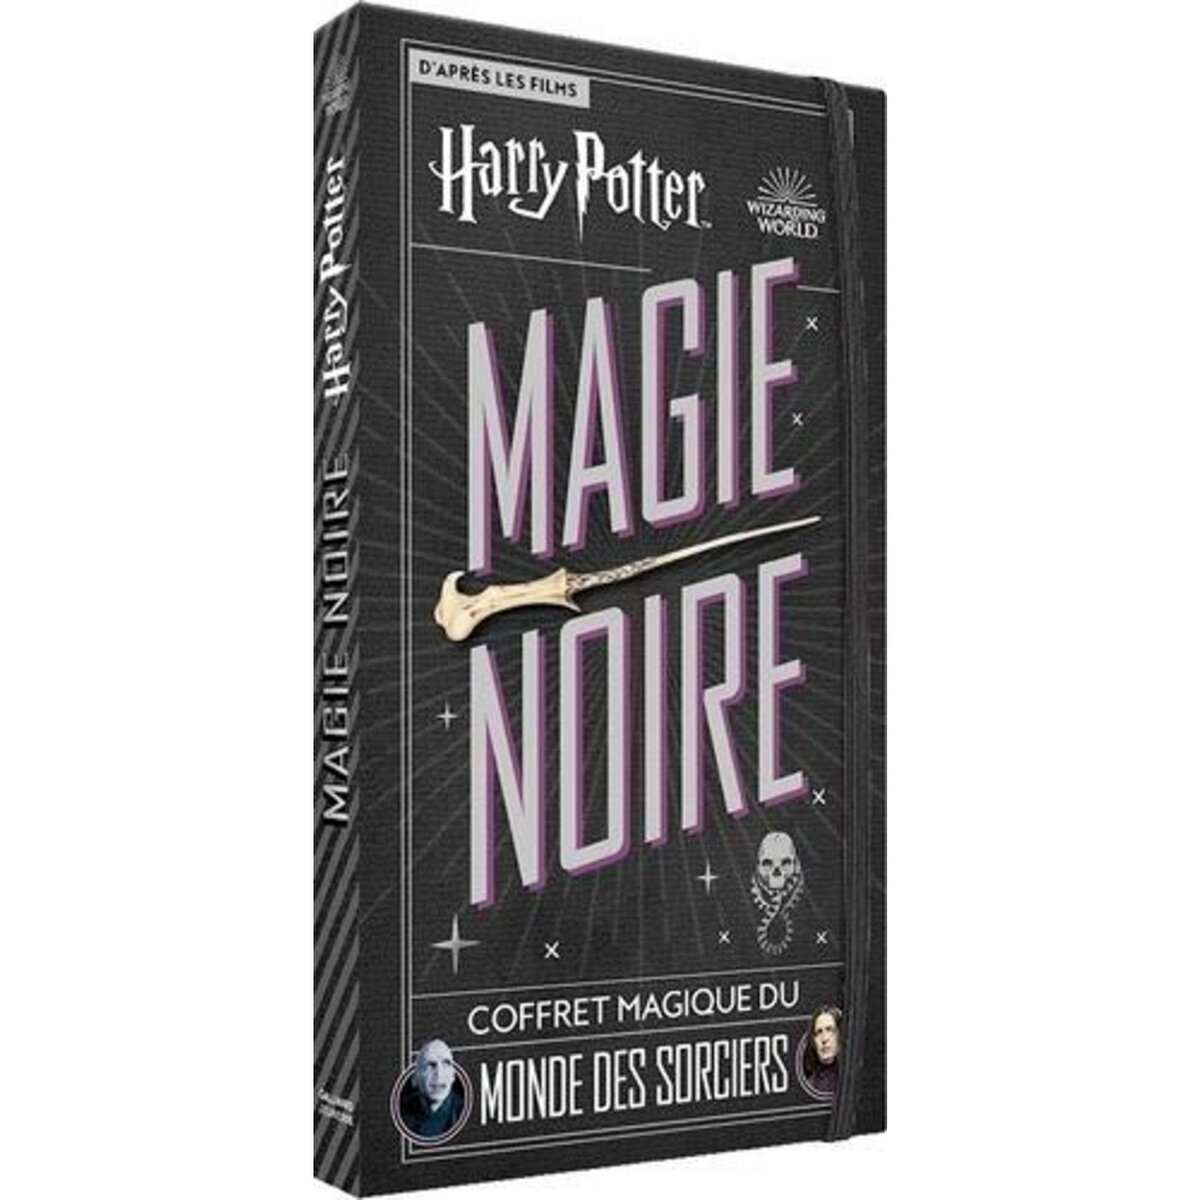 HARRY POTTER MAGIE NOIRE. COFFRET MAGIQUE DU MONDE DES SORCIERS